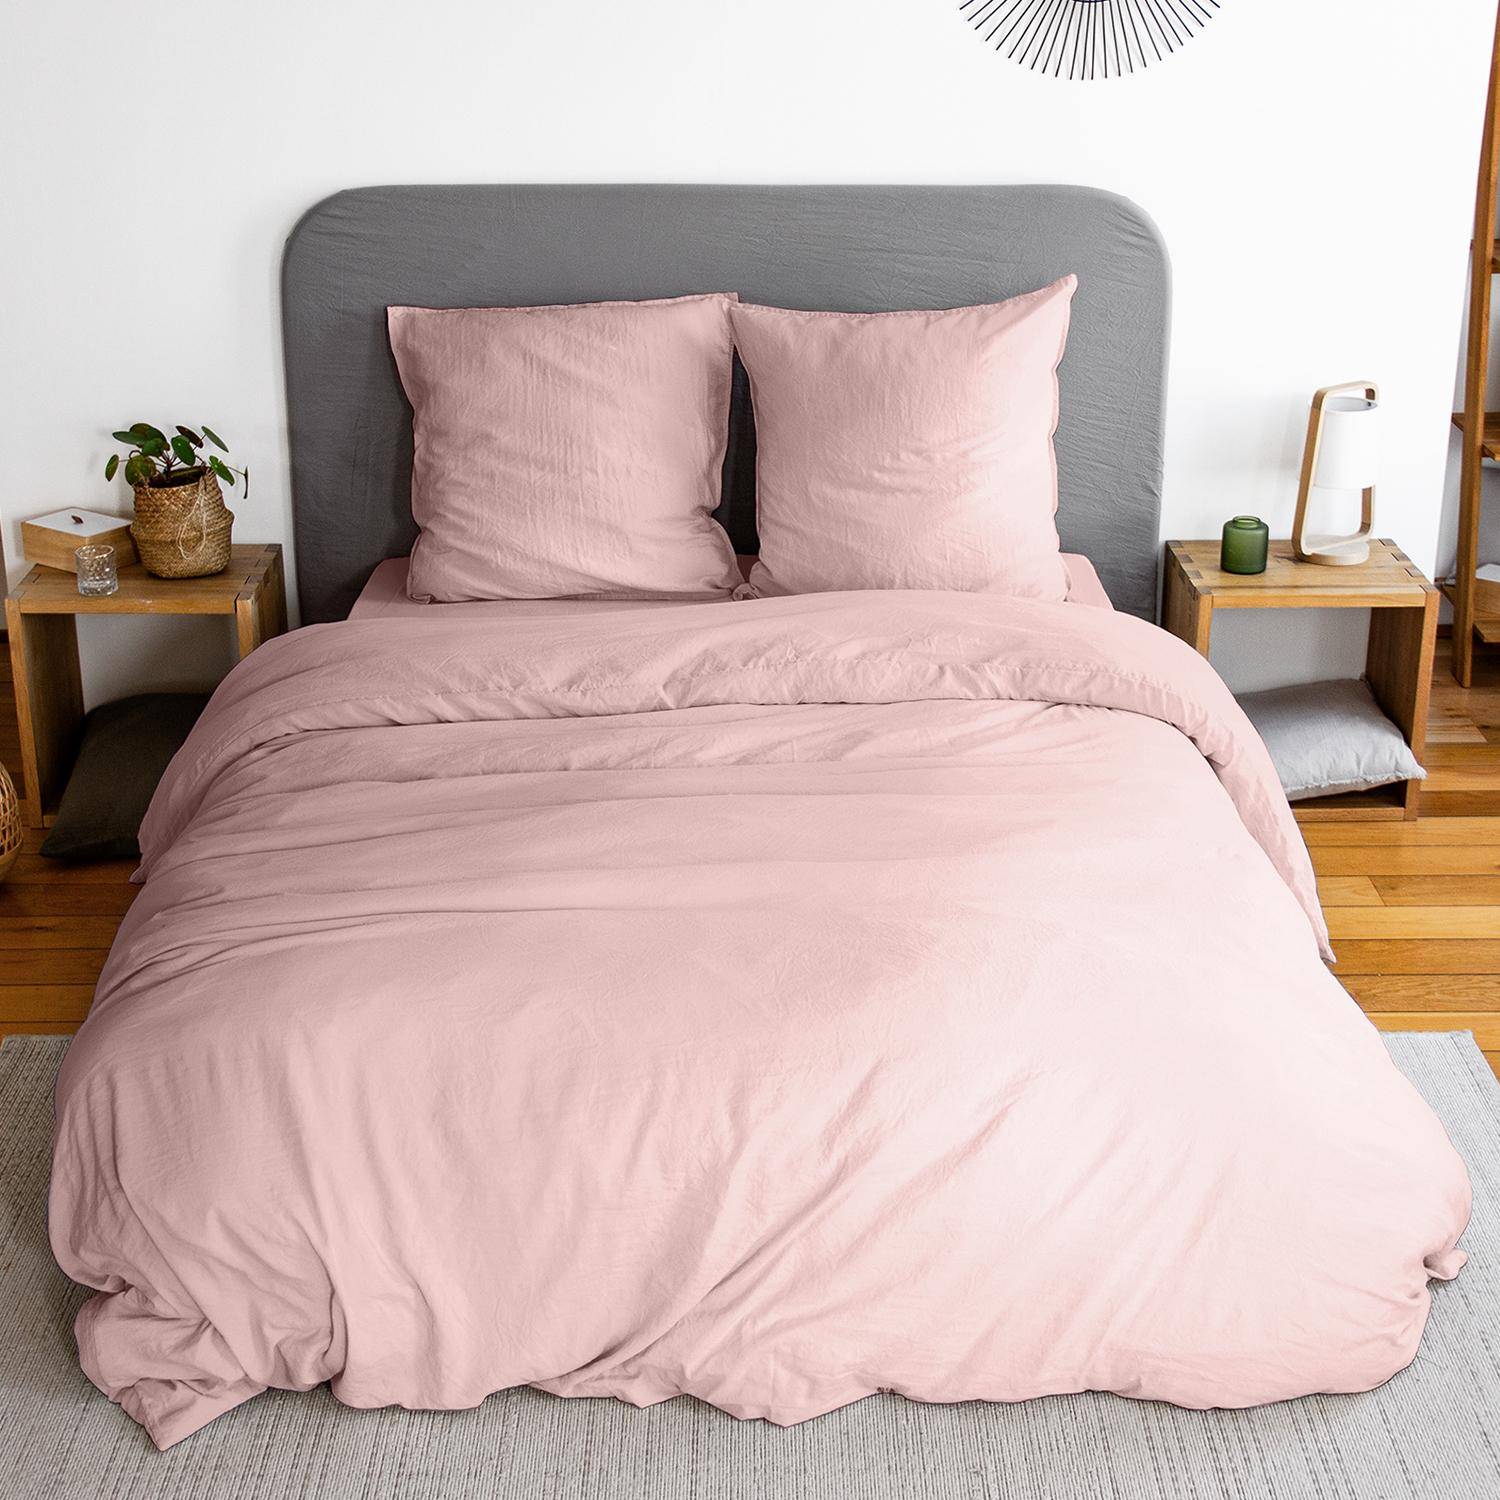 Bettwäsche-Set aus vorgewaschener Mikrofaser in rosa 240 x 220 cm für Doppelbetten, 1 Bettbezug und 2 Kissenbezüge,sweeek,Photo3